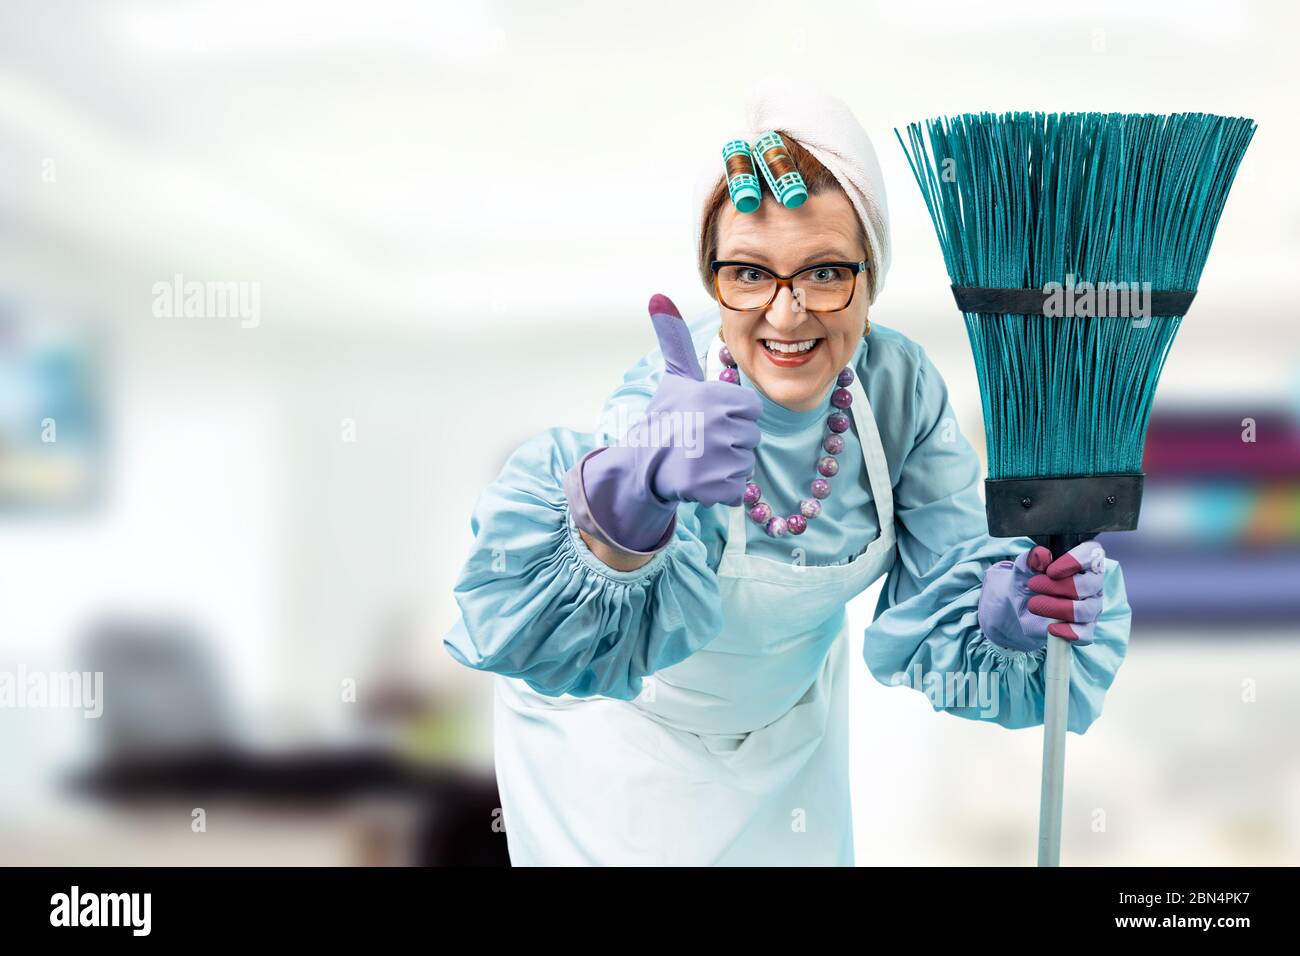 Ritratto di una donna che pulisce con una scopa in mano. Una donna che pulisce in uniforme si trova contro un ufficio luminoso. Foto Stock